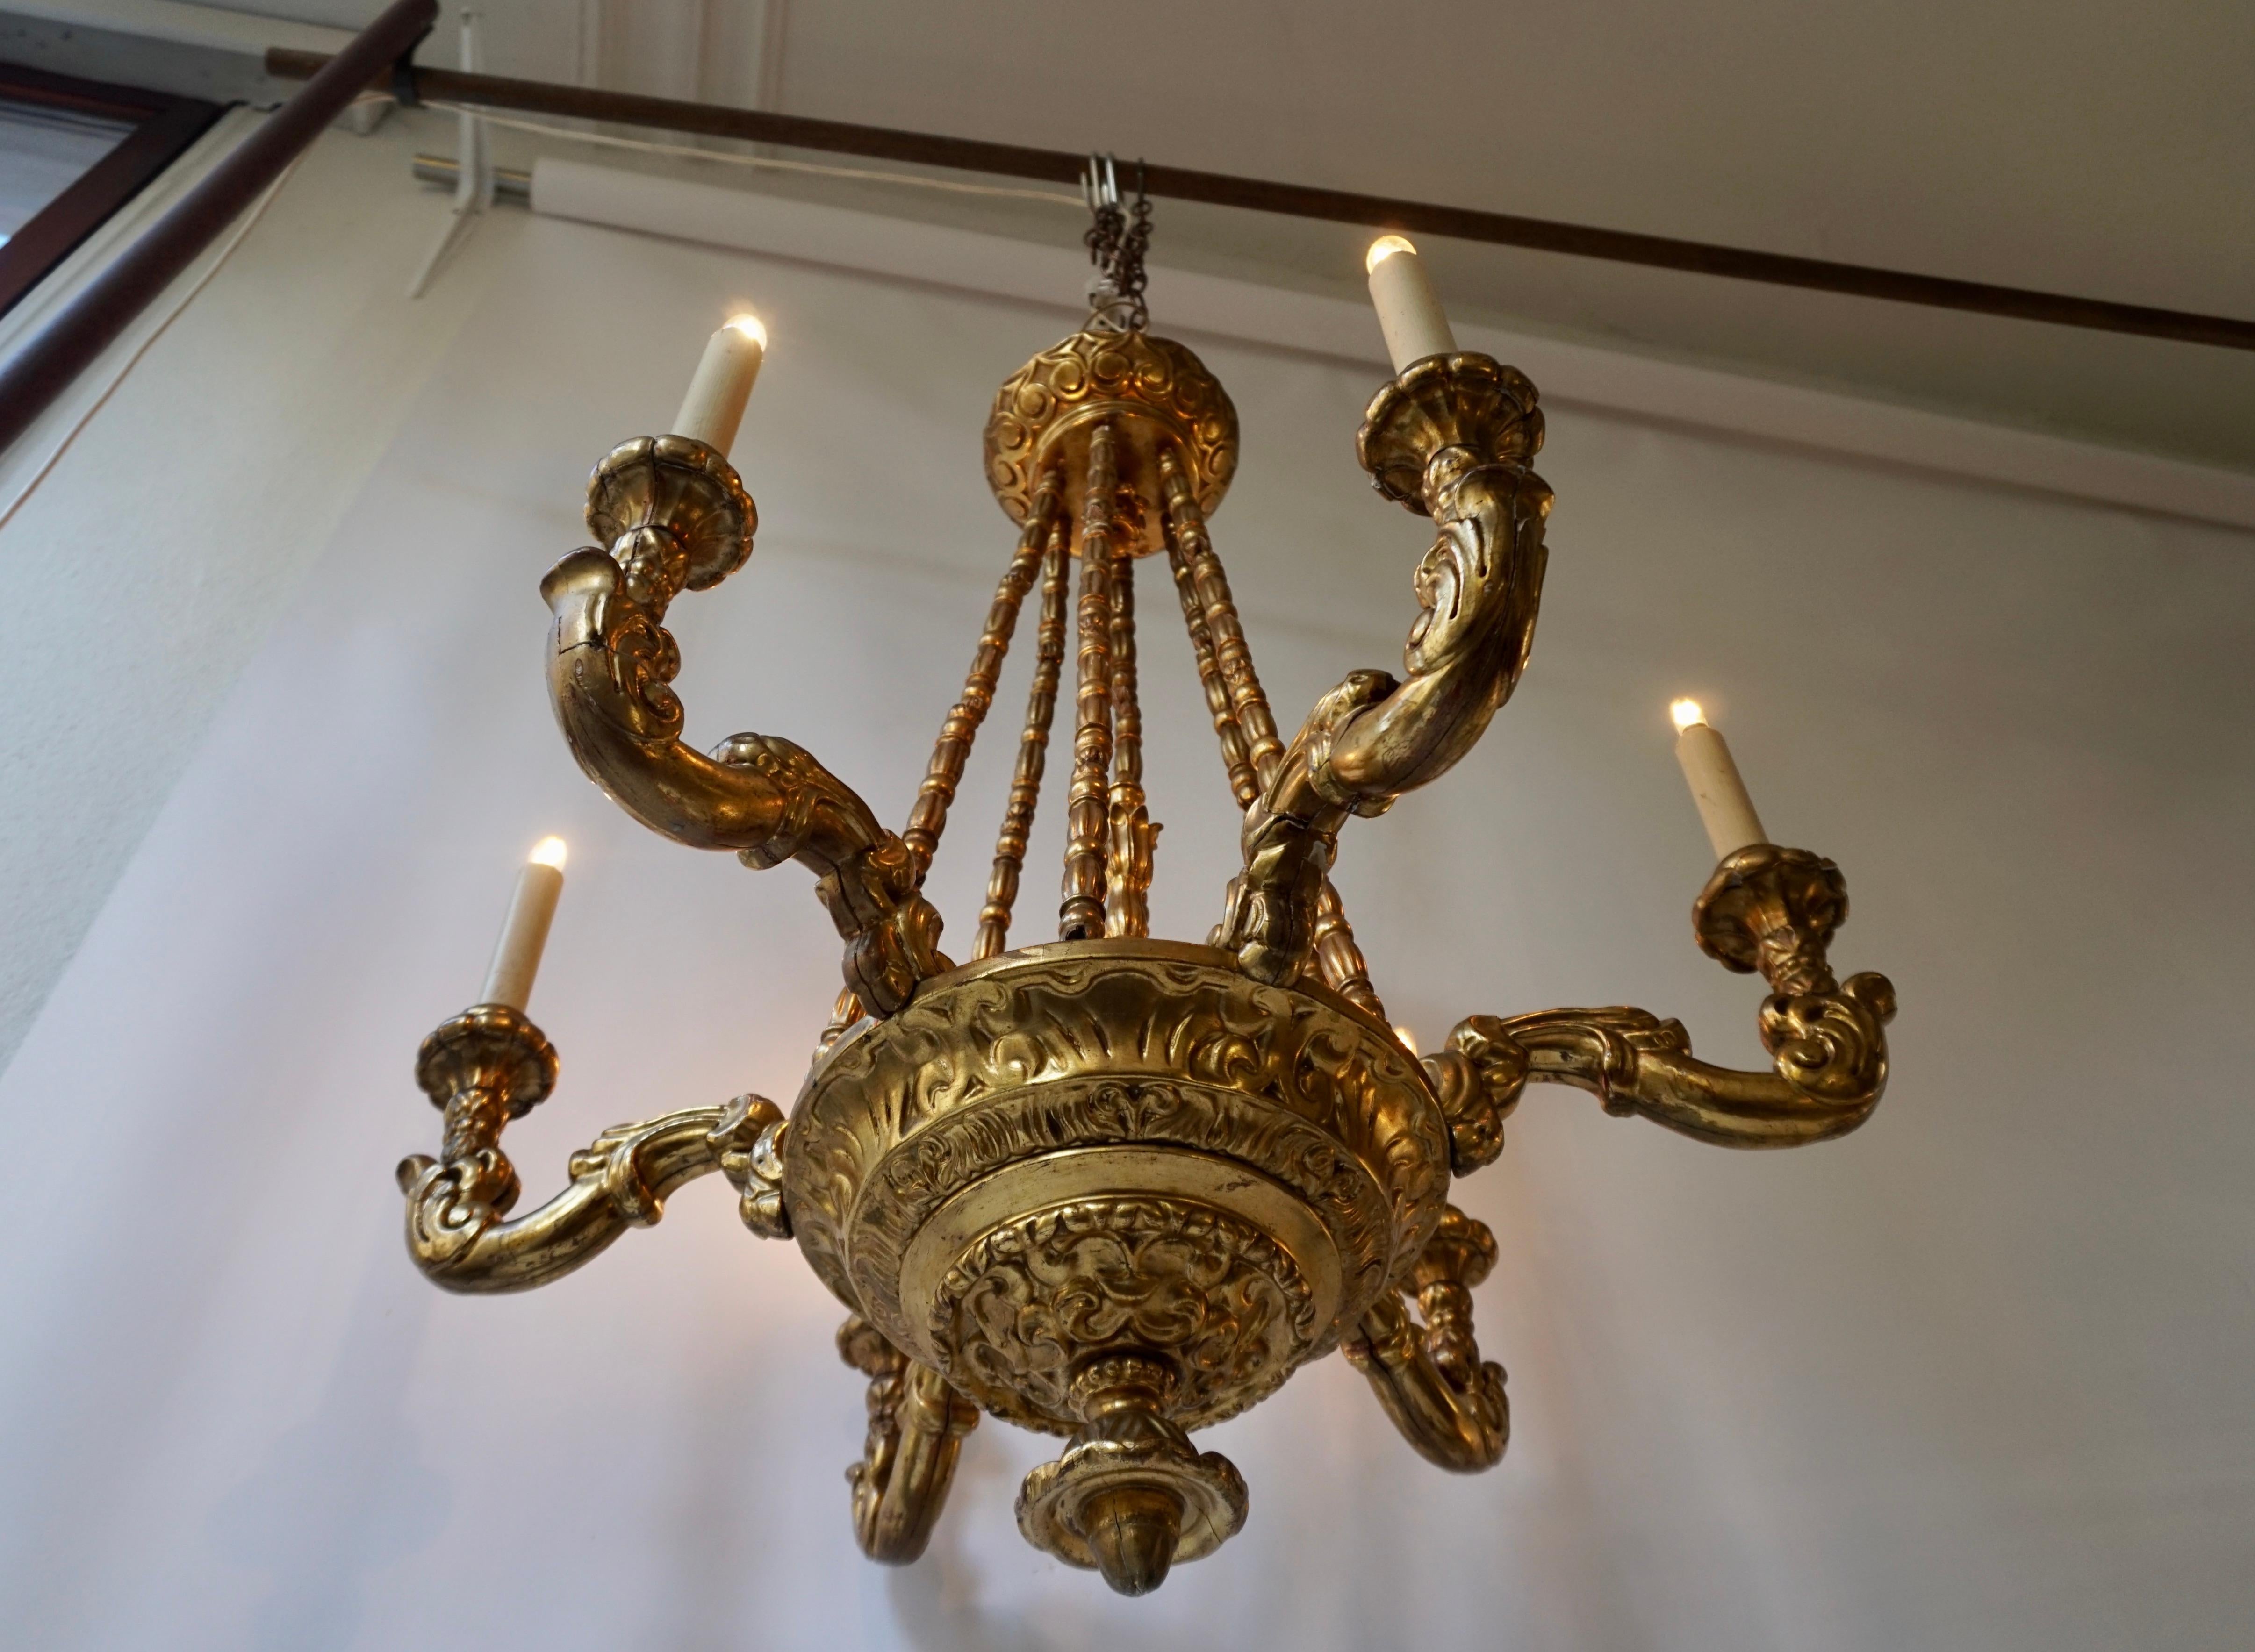 Un lustre électrifié à 6 lumières en bois doré, métal et stuc, très décoratif et élégant.
Italie, milieu du 20e siècle, (années 1920-1950).

Le luminaire nécessite six ampoules à vis E14 (60 Watt max.) compatibles avec les LED.
Mesures :